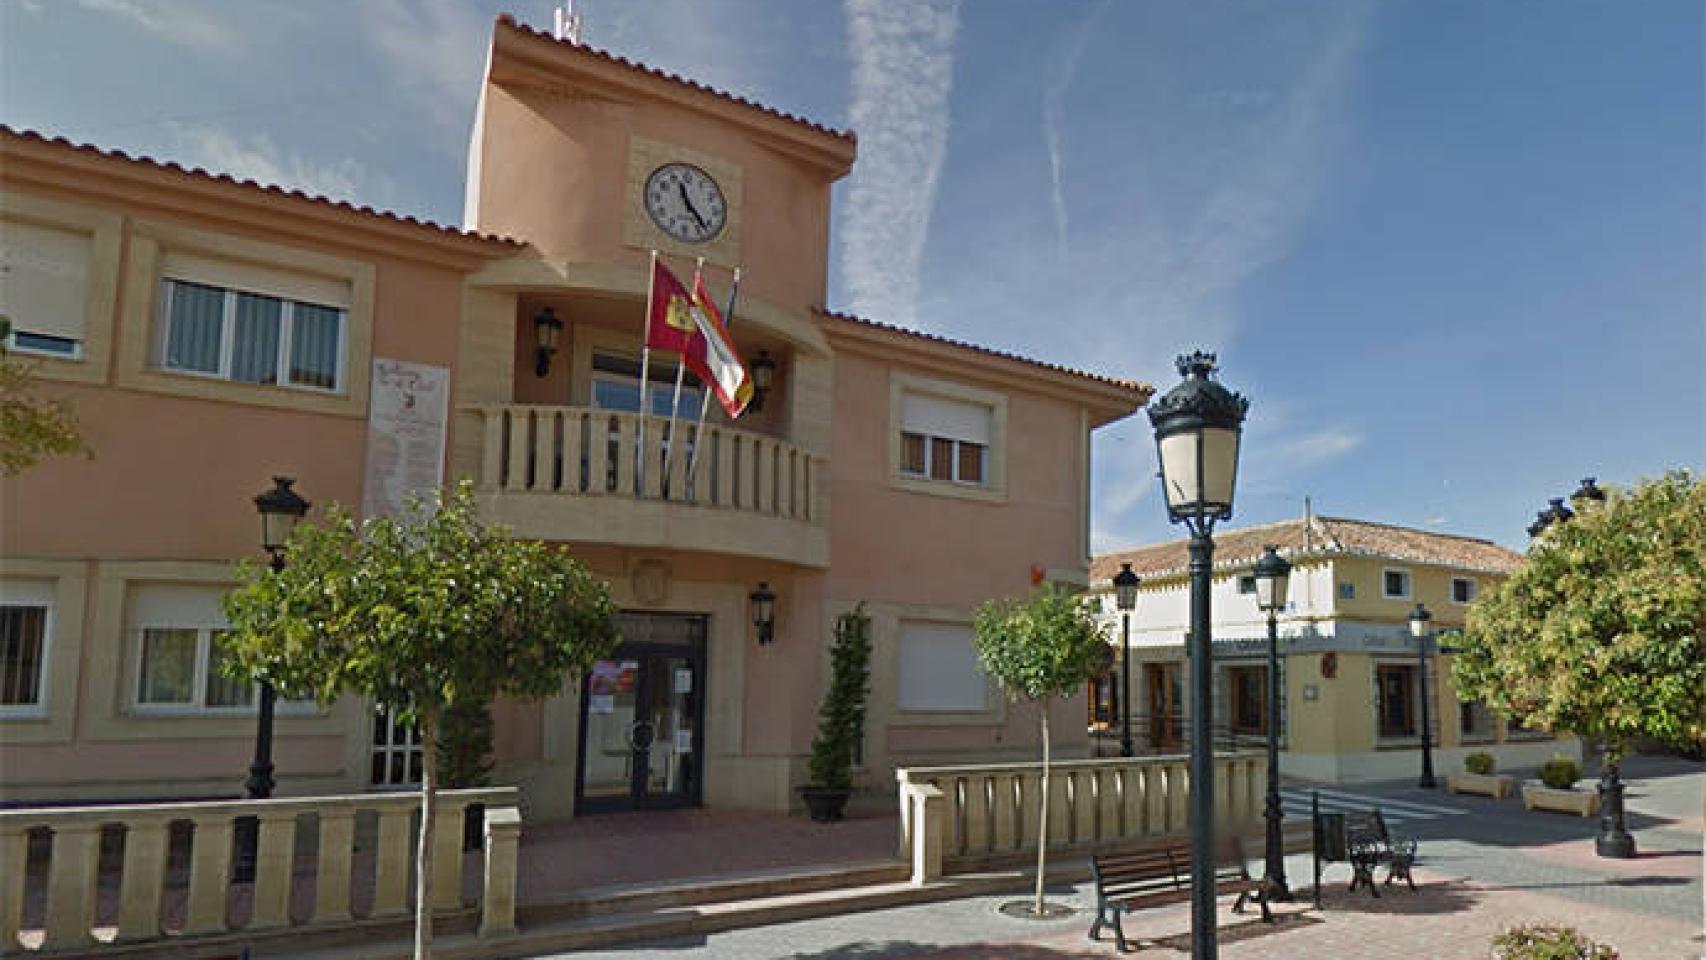 FOTO: Ayuntamiento de Pozo Cañada (Google Maps)